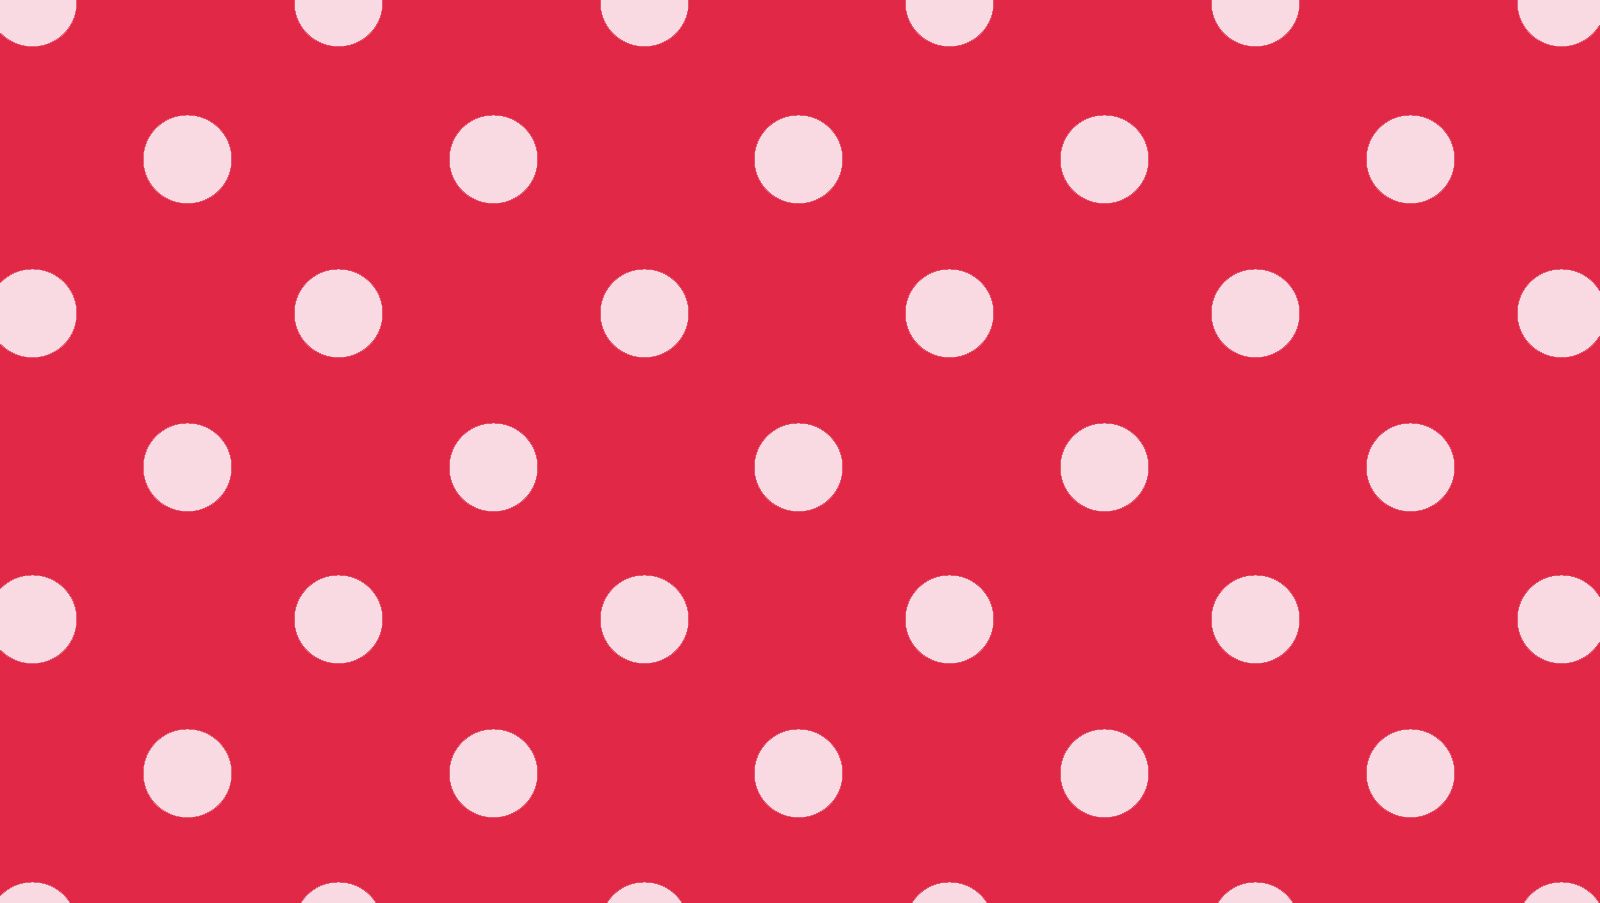 Polka Dot Wallpaper 15 - Best Wallpaper Collection